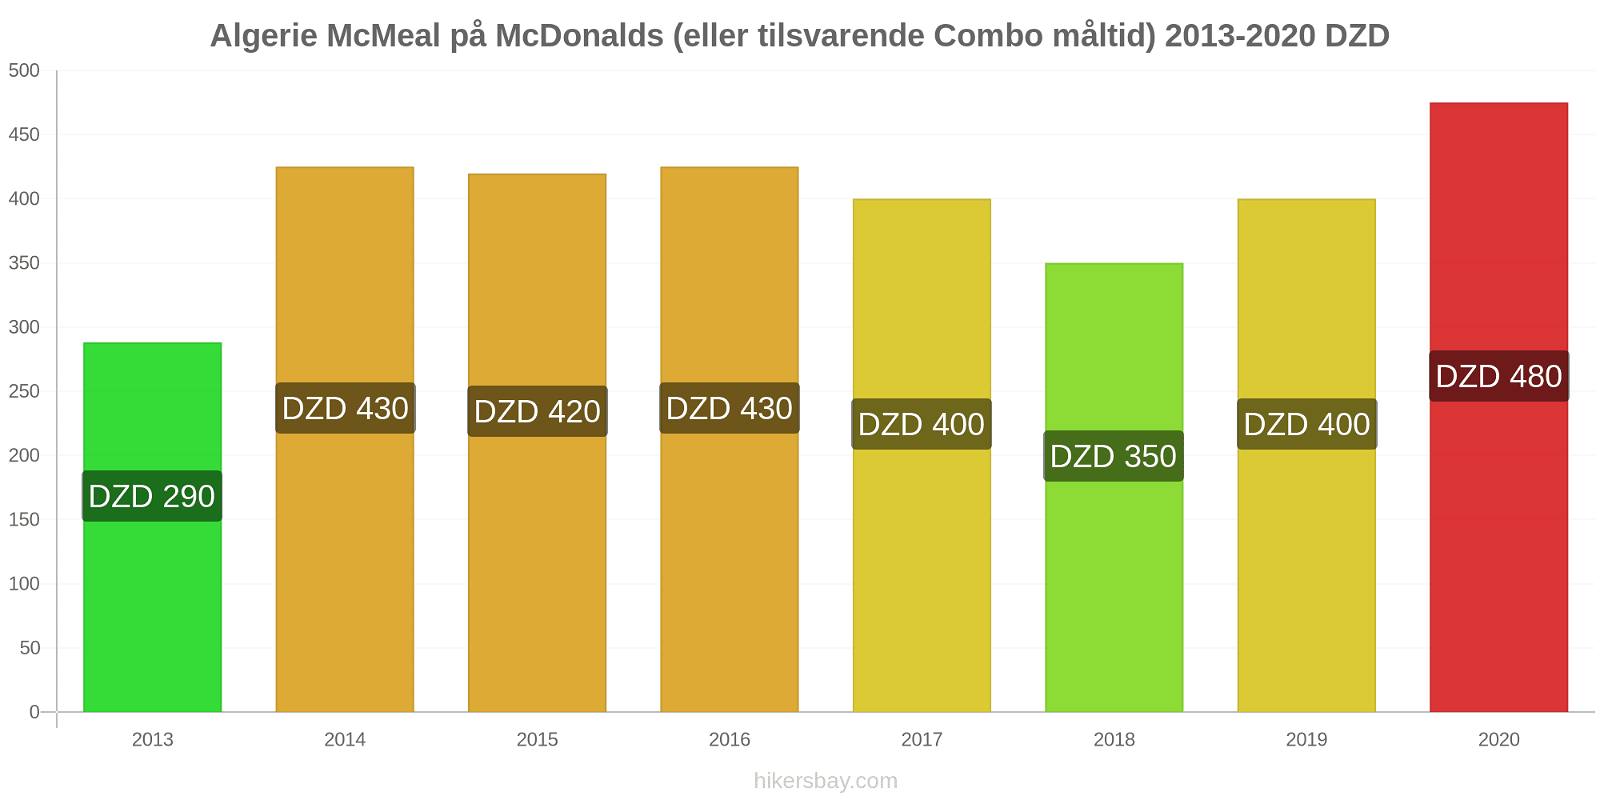 Algerie prisendringer McMeal på McDonalds (eller tilsvarende Combo måltid) hikersbay.com